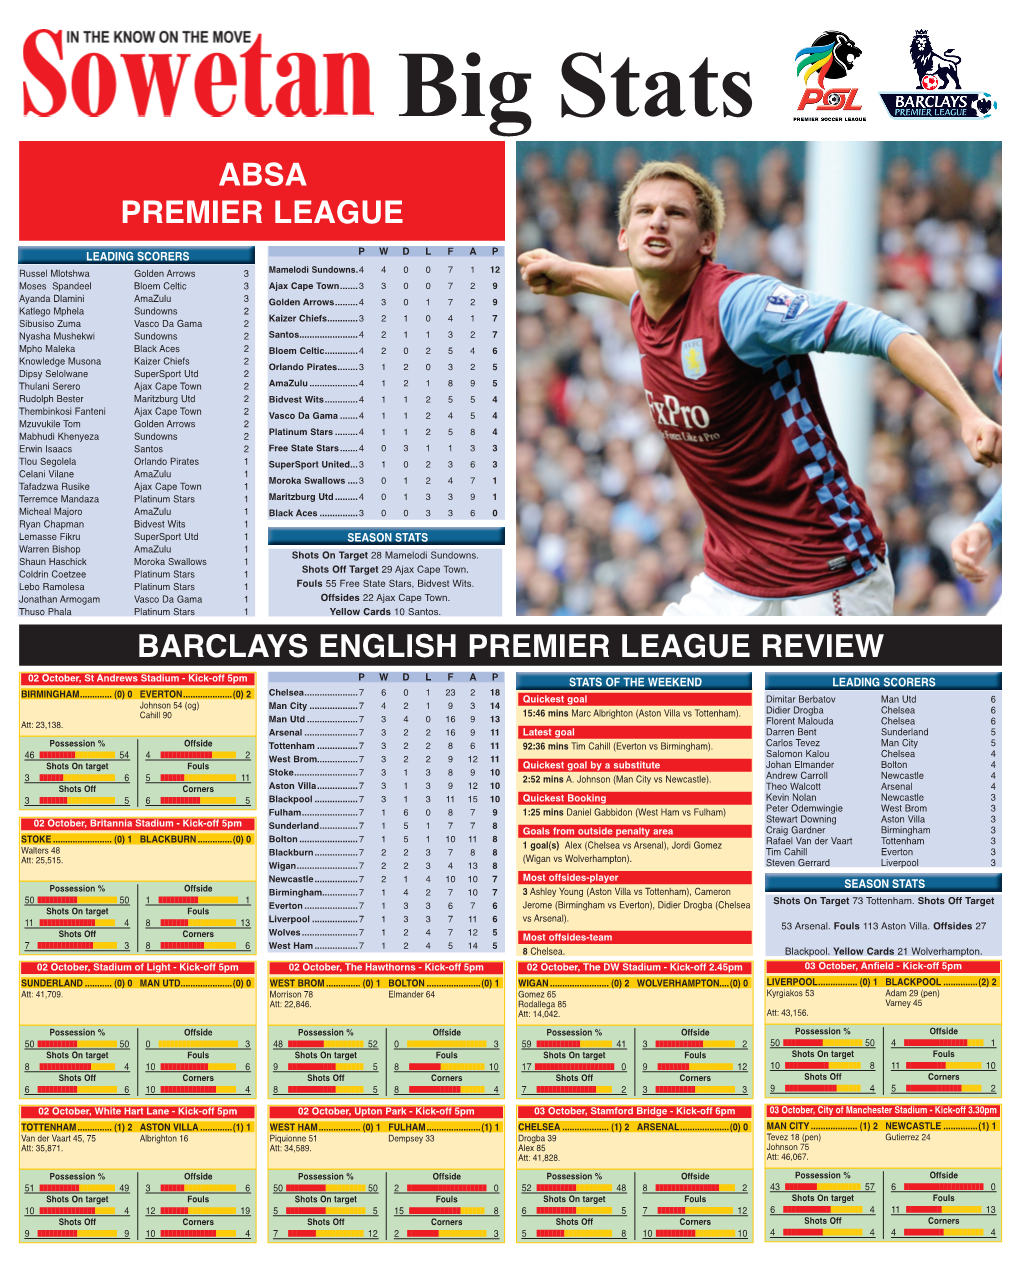 Absa Premier League Barclays English Premier